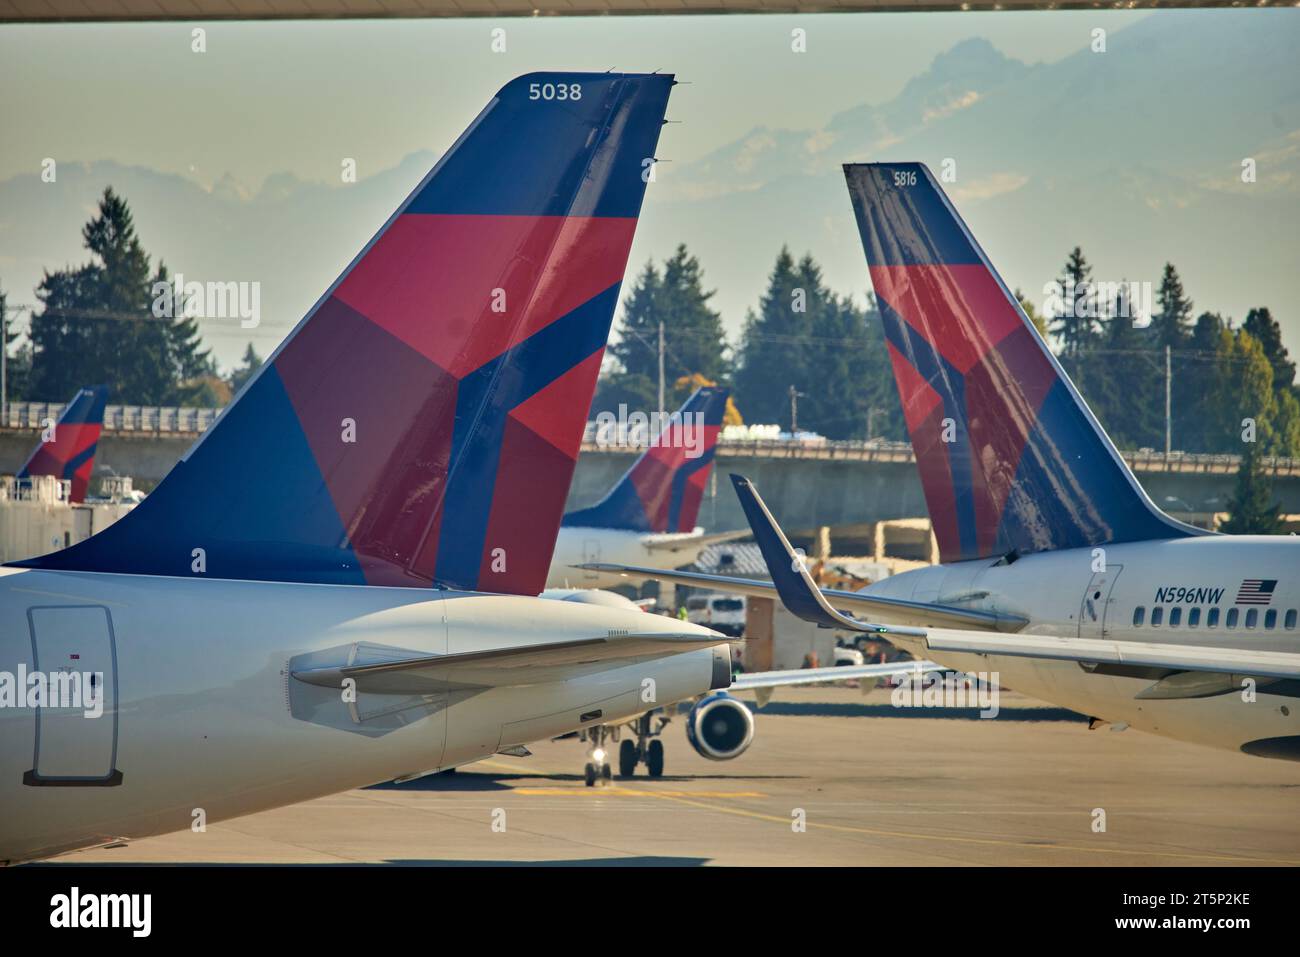 Aeroporto internazionale di Seattle Tacoma, Delta Airplanes, Foto Stock